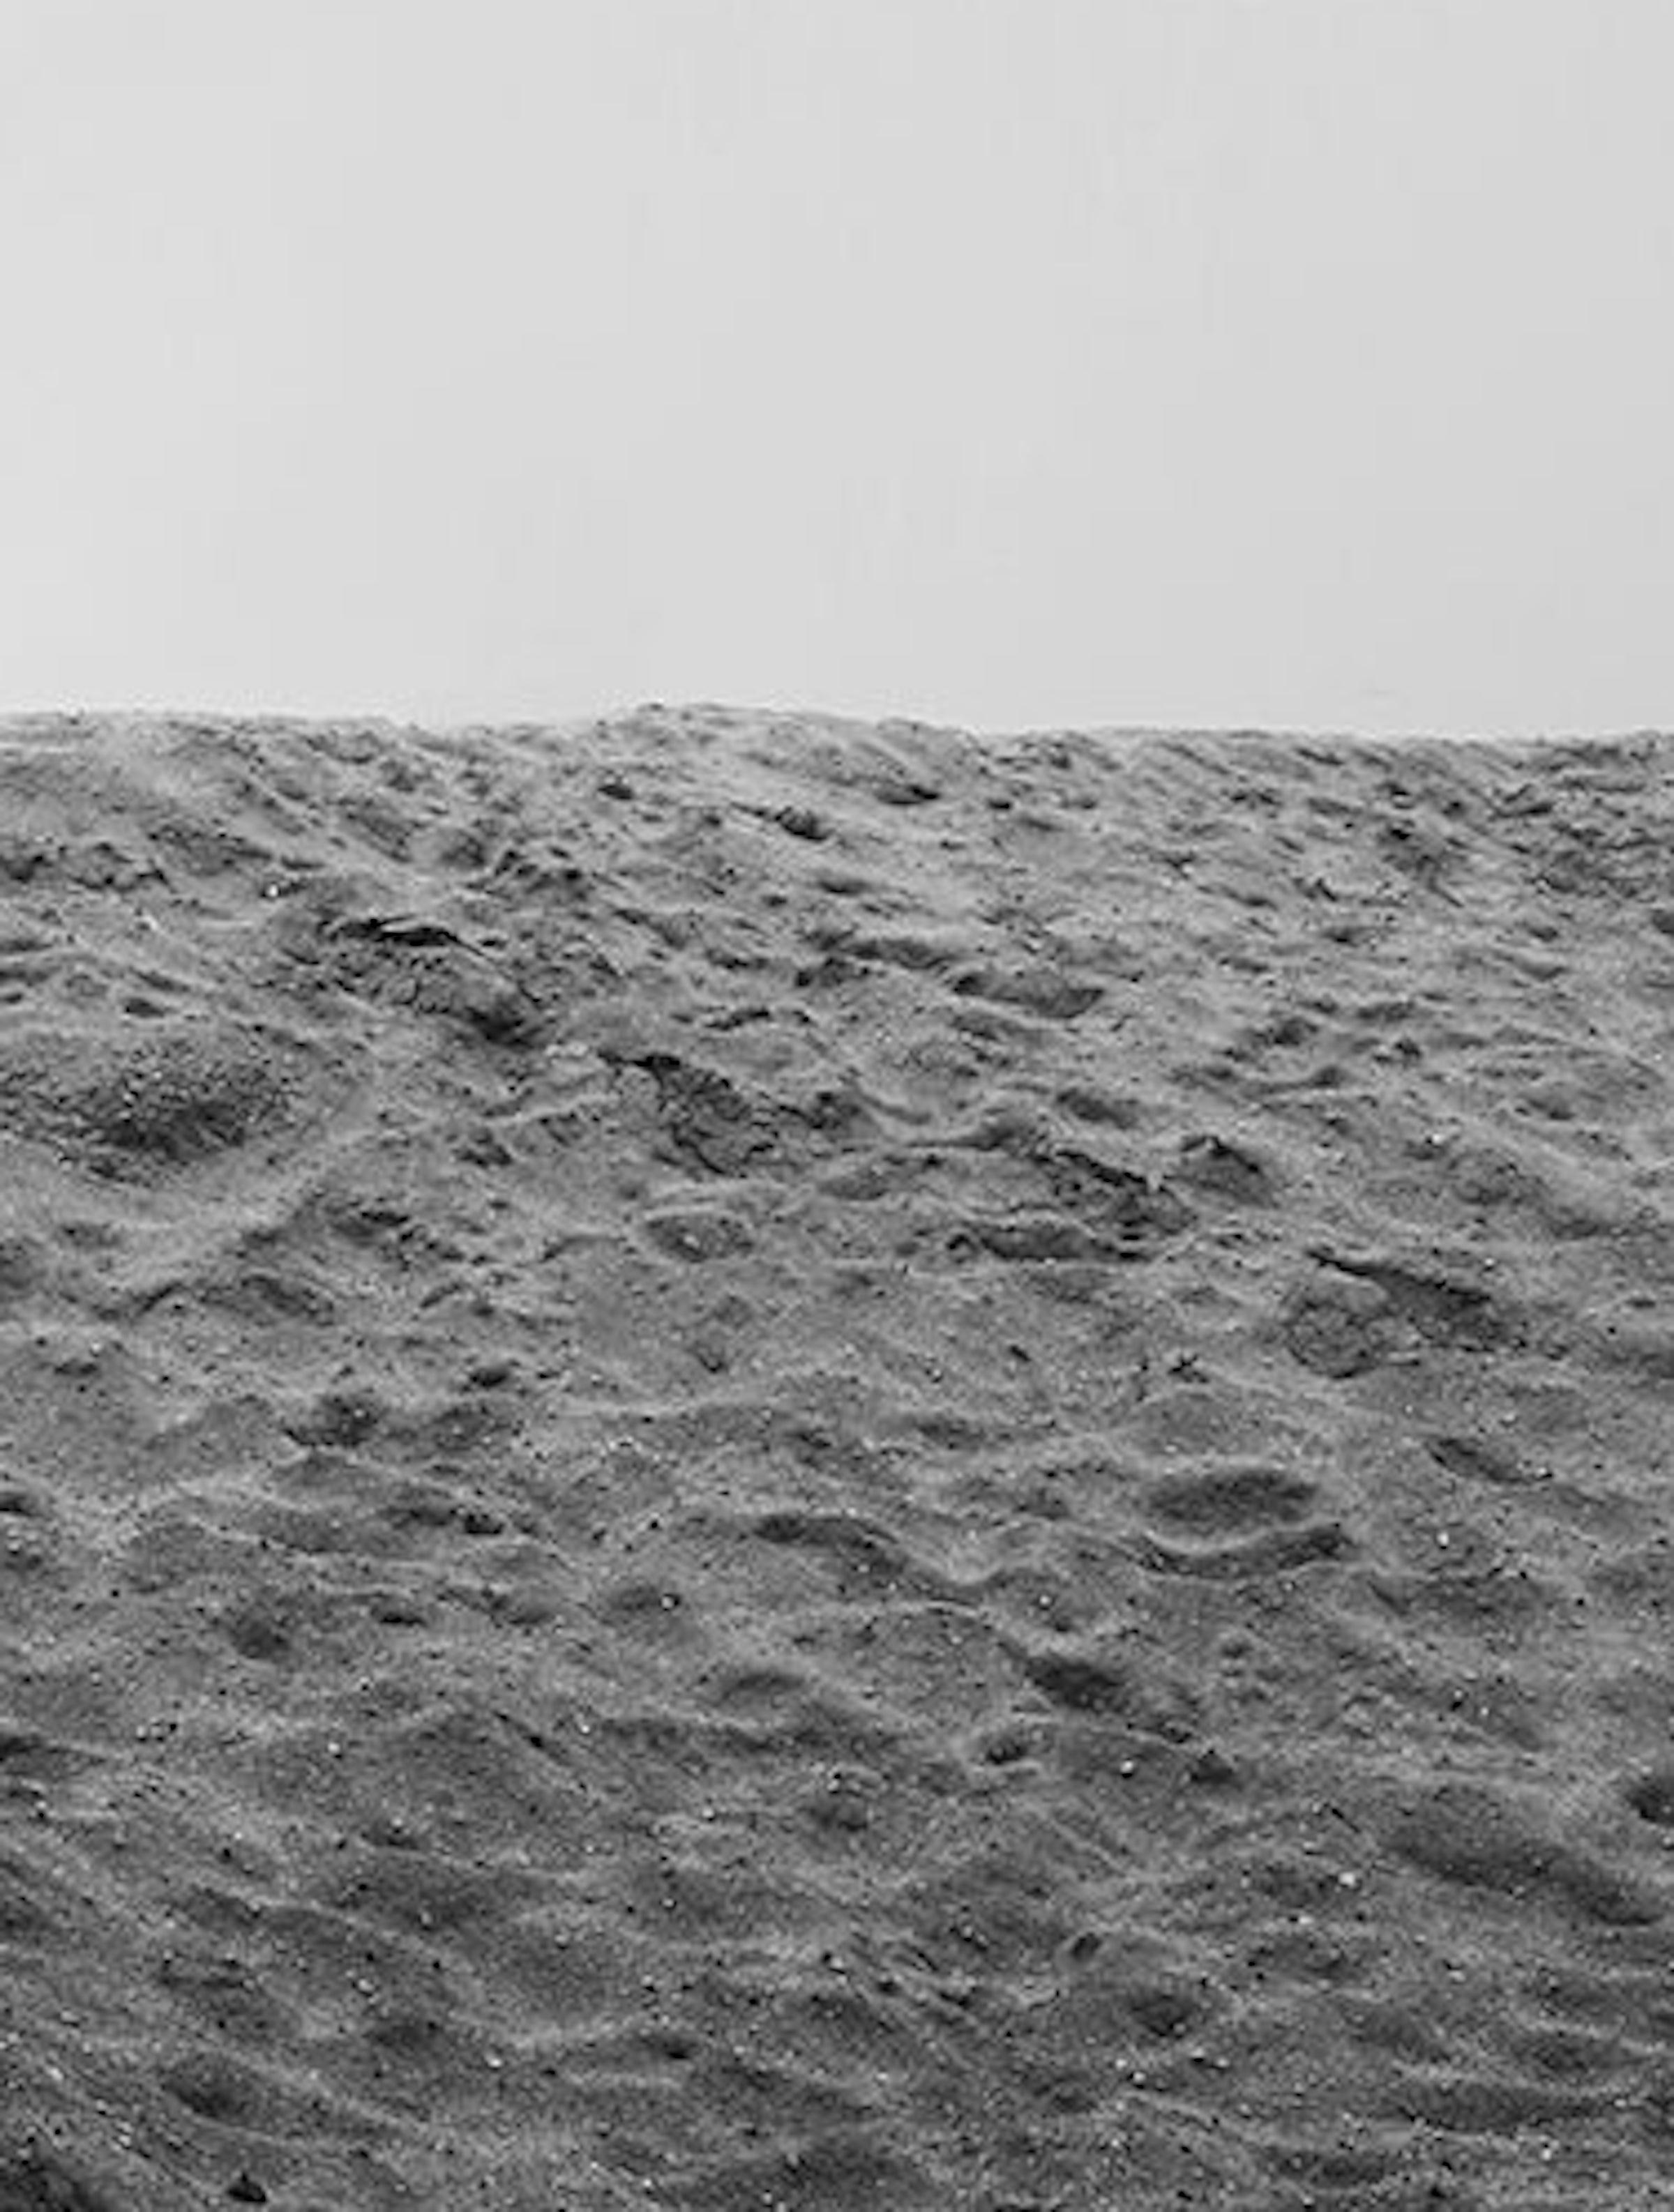 Herren und Palme, Baum. Limitierte Auflage einer Schwarz-Weiß-Fotografie (Zeitgenössisch), Photograph, von Ricky Cohete